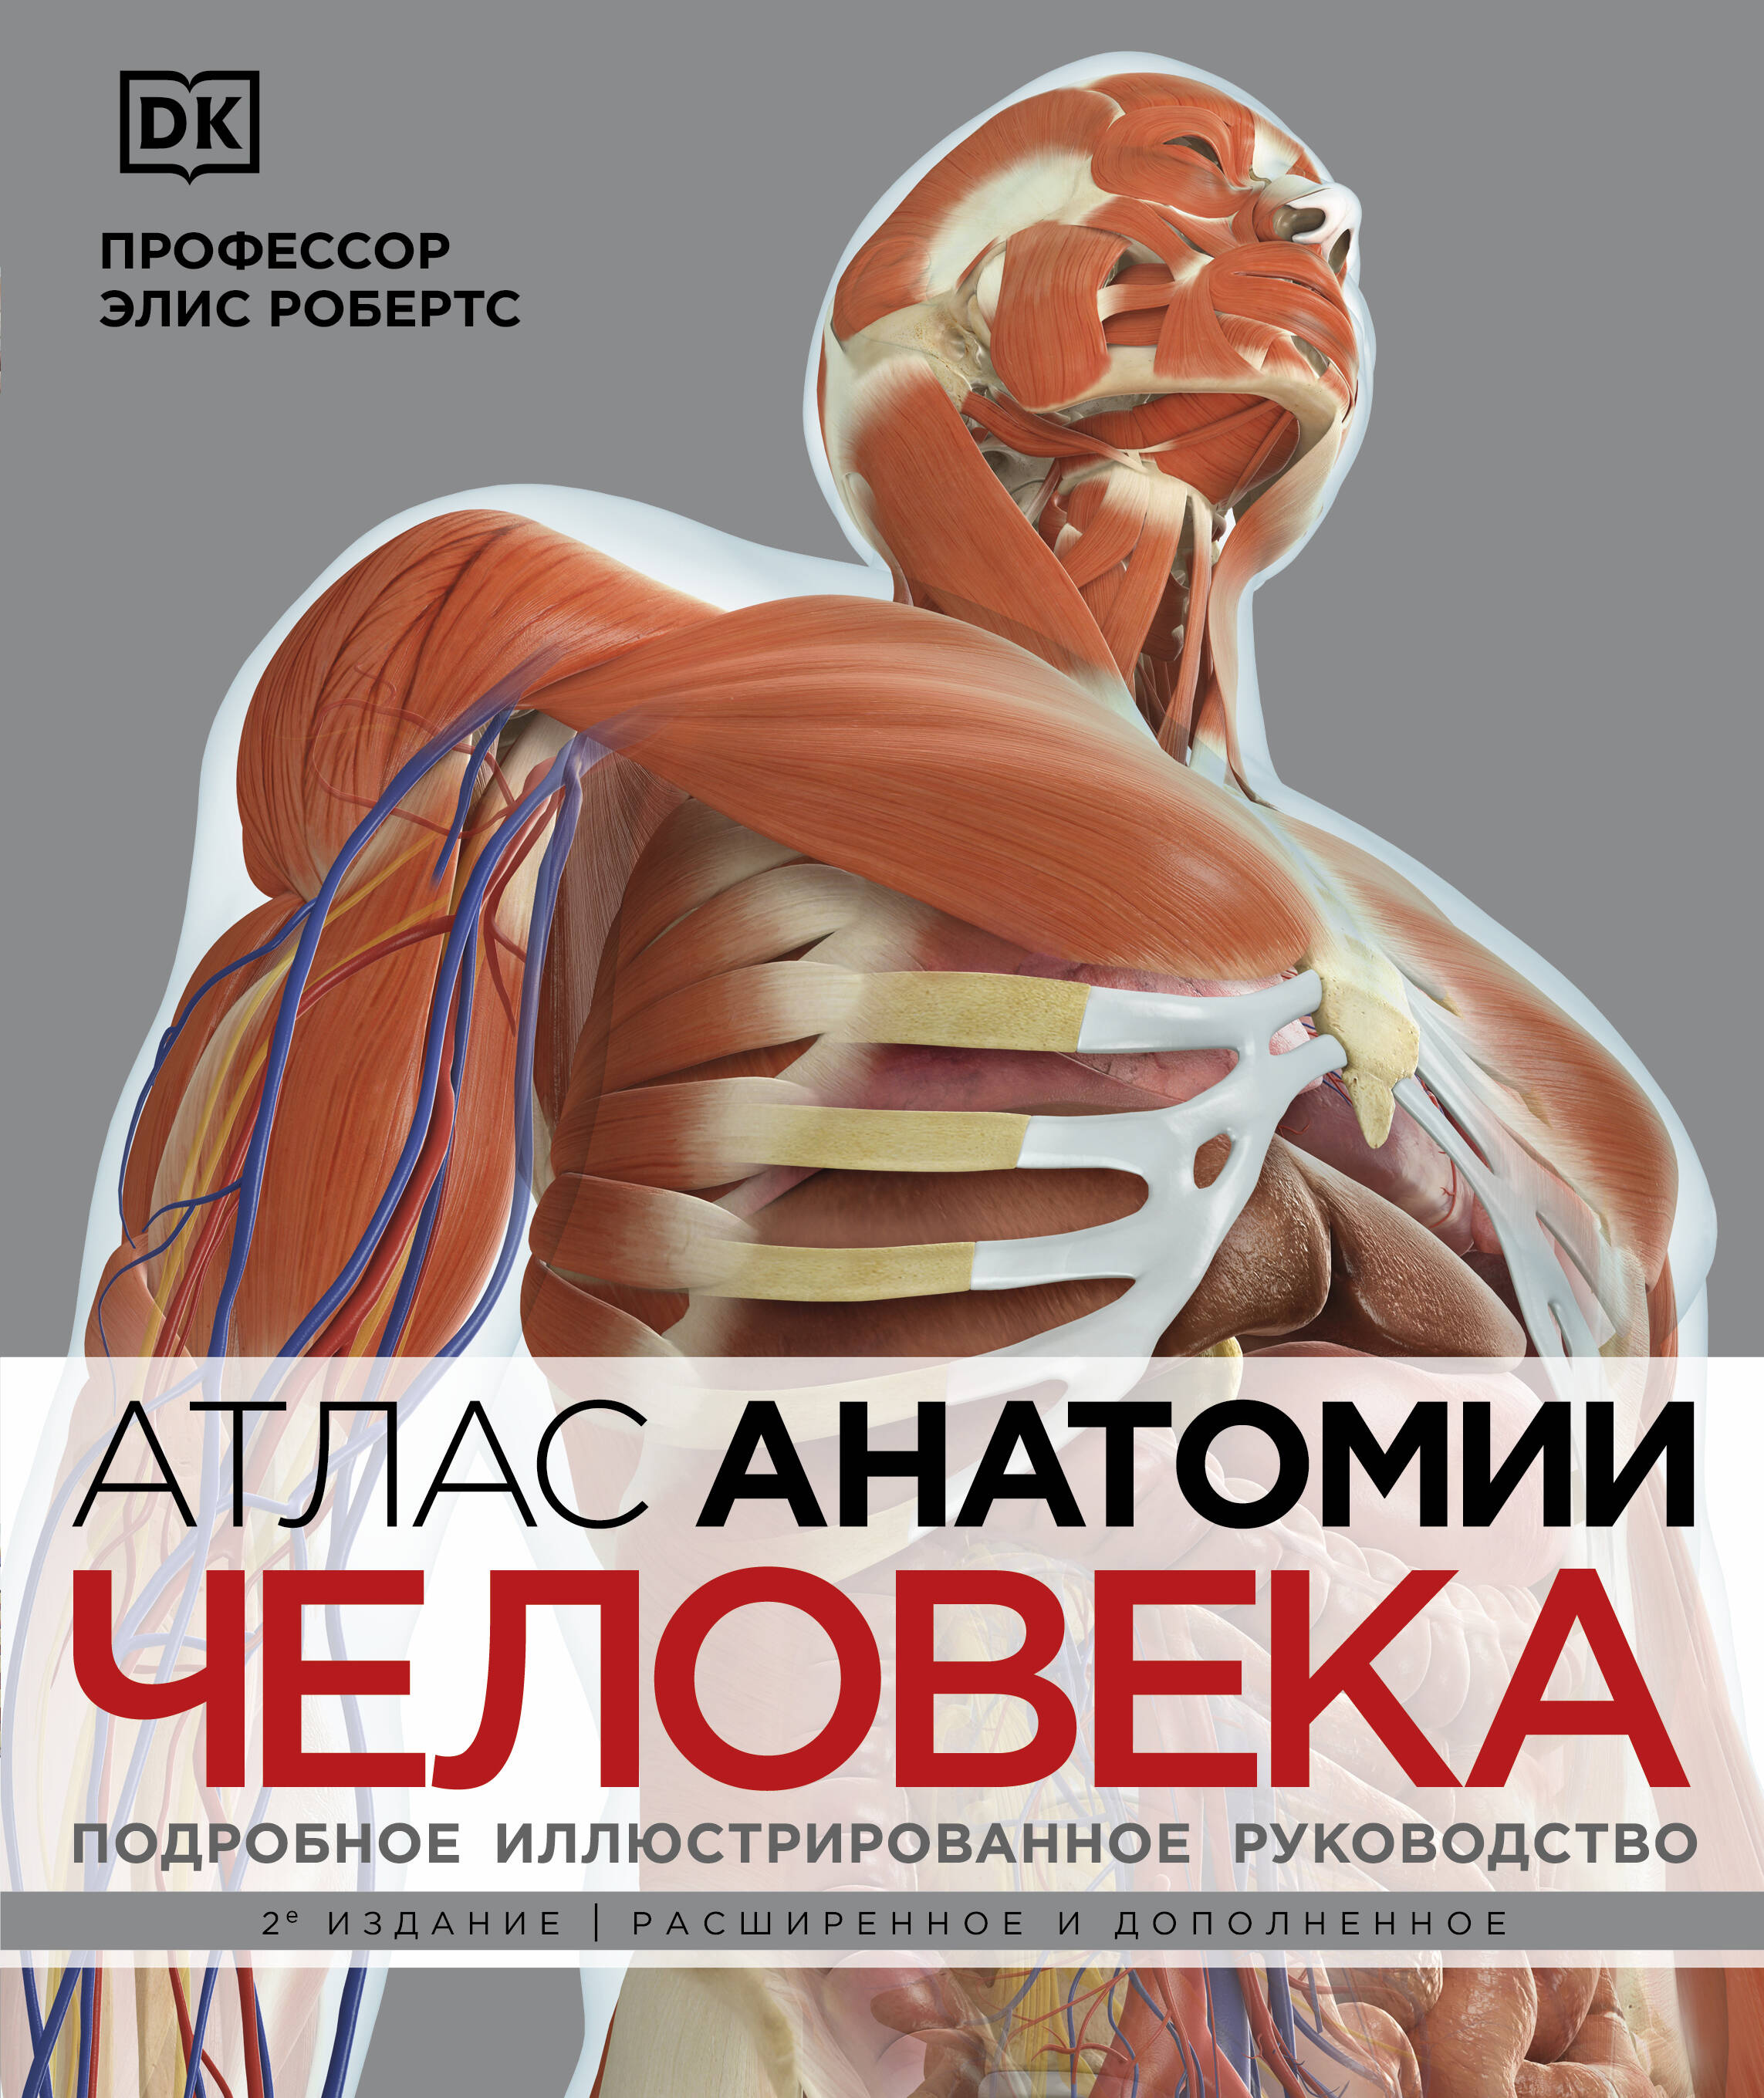 Атлас анатомии человека. Подробное иллюстрированное руководство атлас анатомии человека подробное иллюстрированное руководство